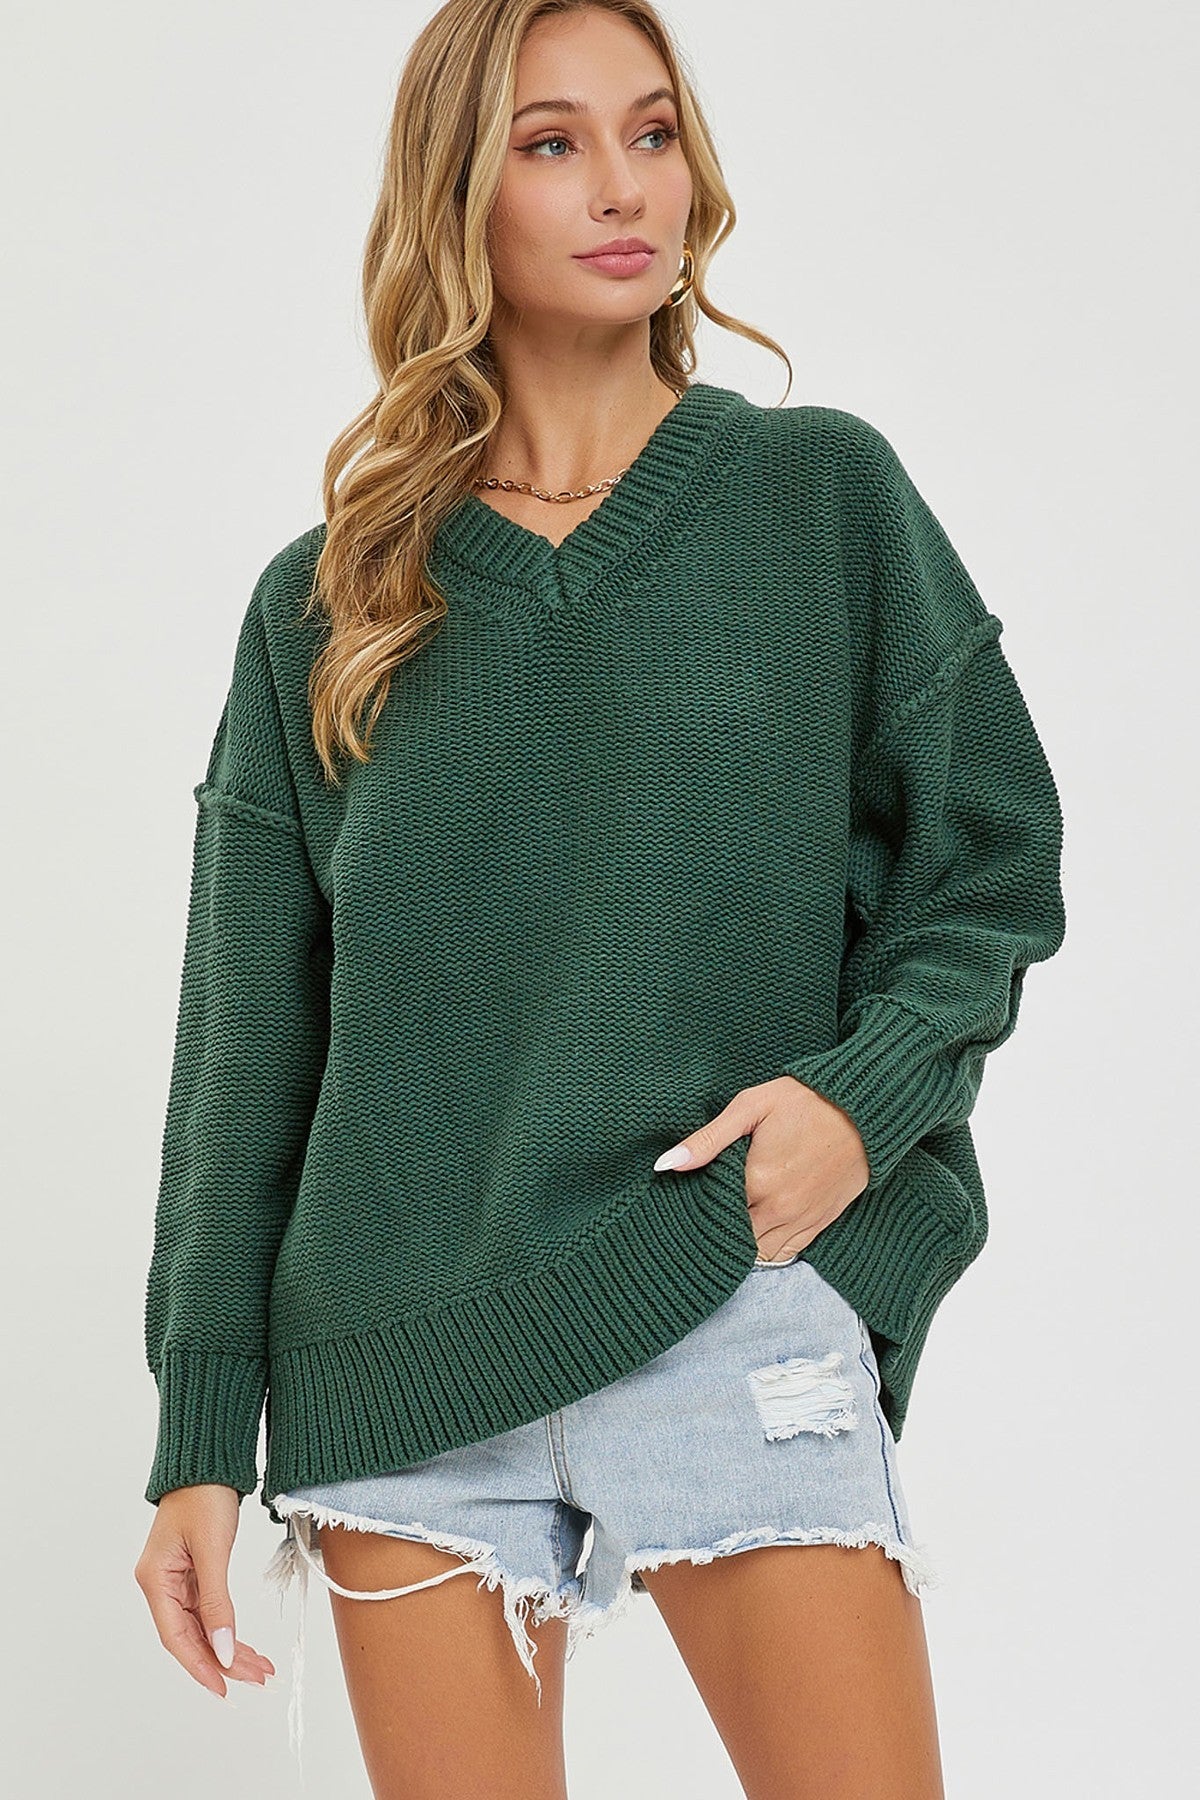 Women's V Neck Oversized Sweater